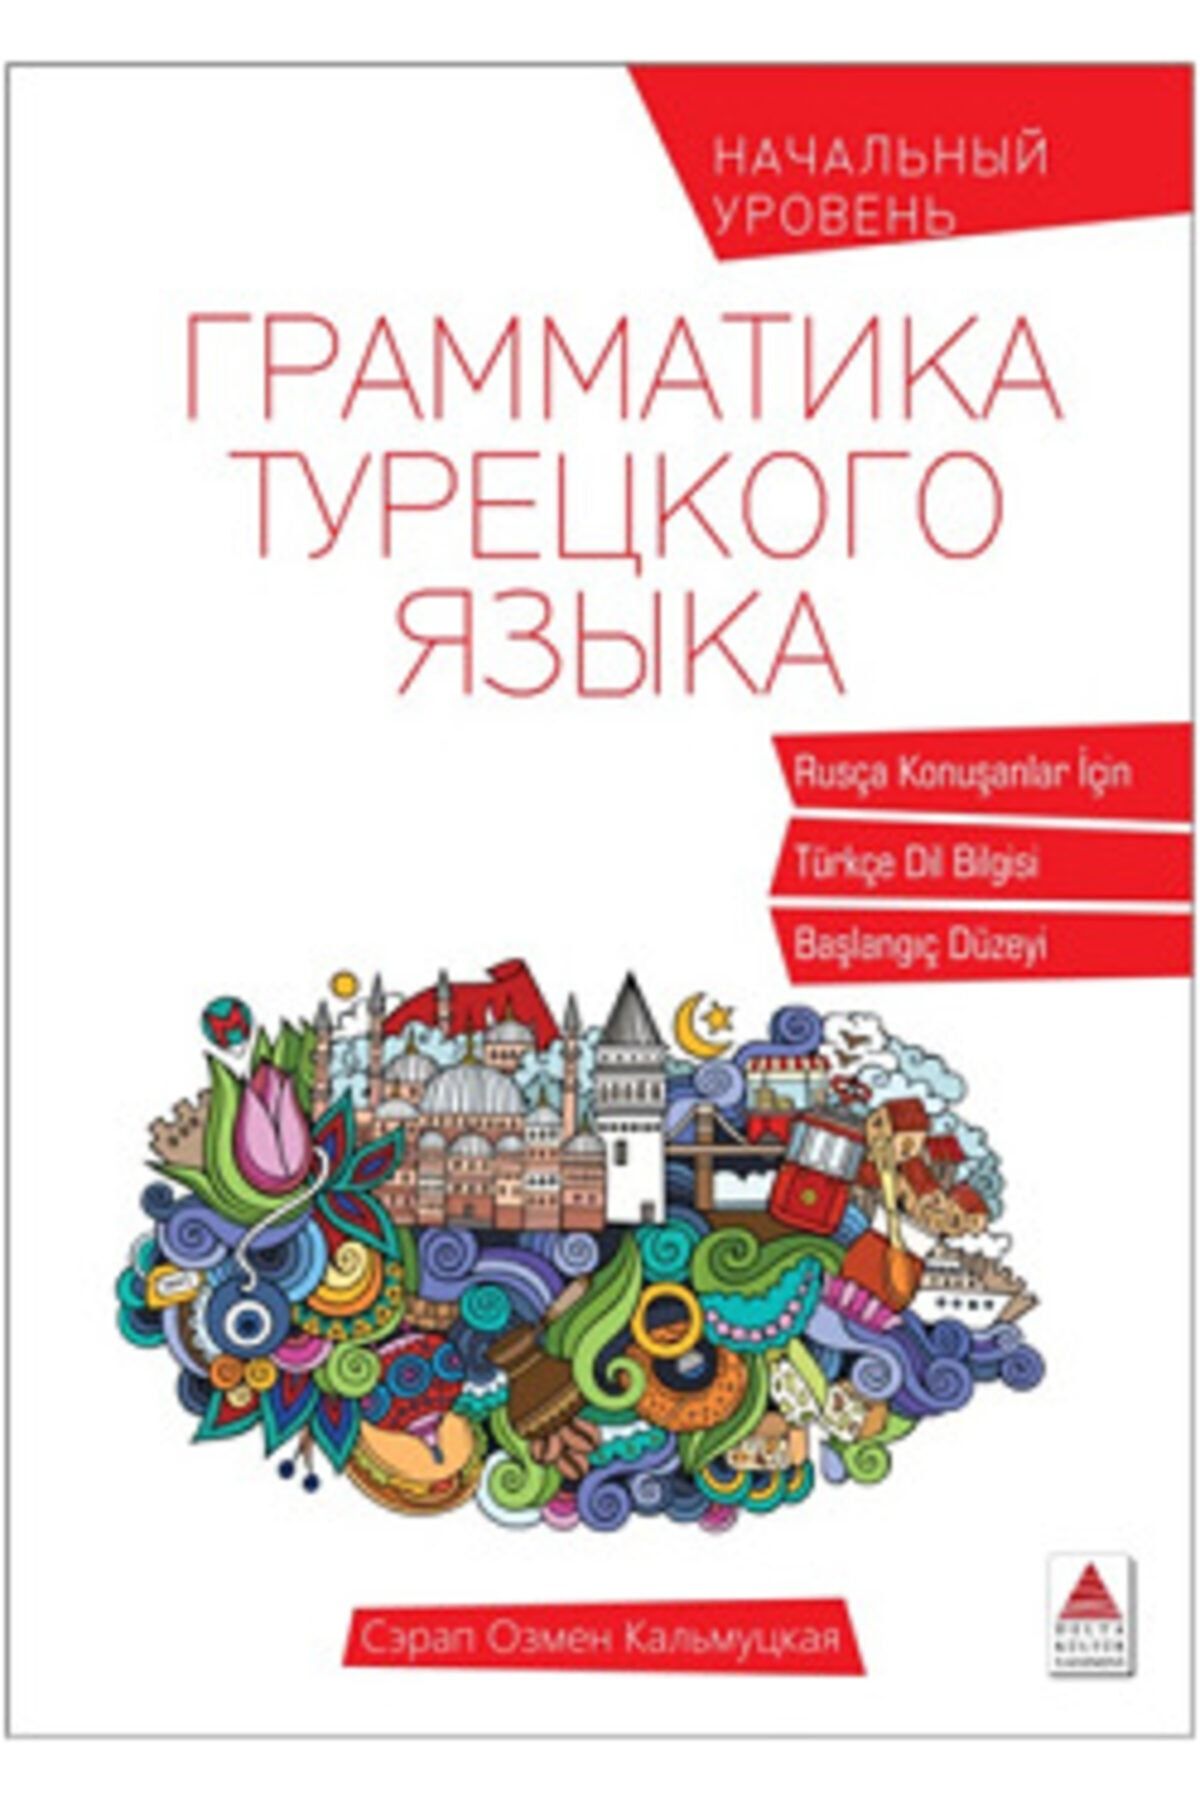 Delta Kültür Yayınevi Rusça Konuşanlar Için Türkçe Dil Bilgisi - Delta Kültür Basım Yayın